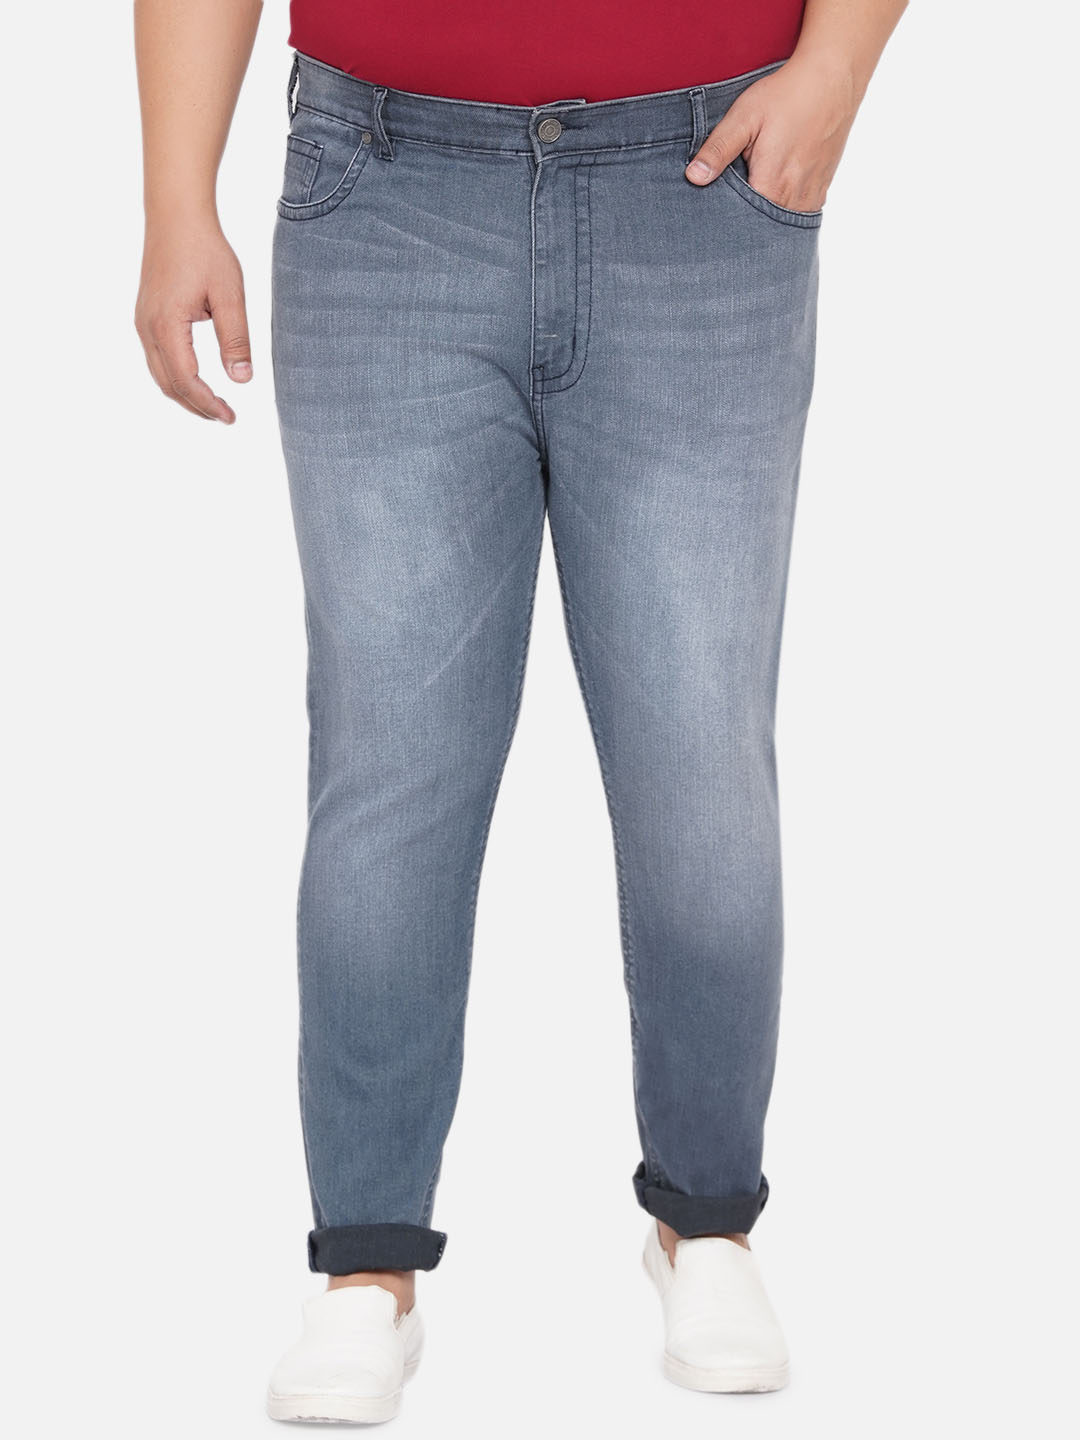 bottomwear/jeans/JPJ12254/jpj12254-1.jpg